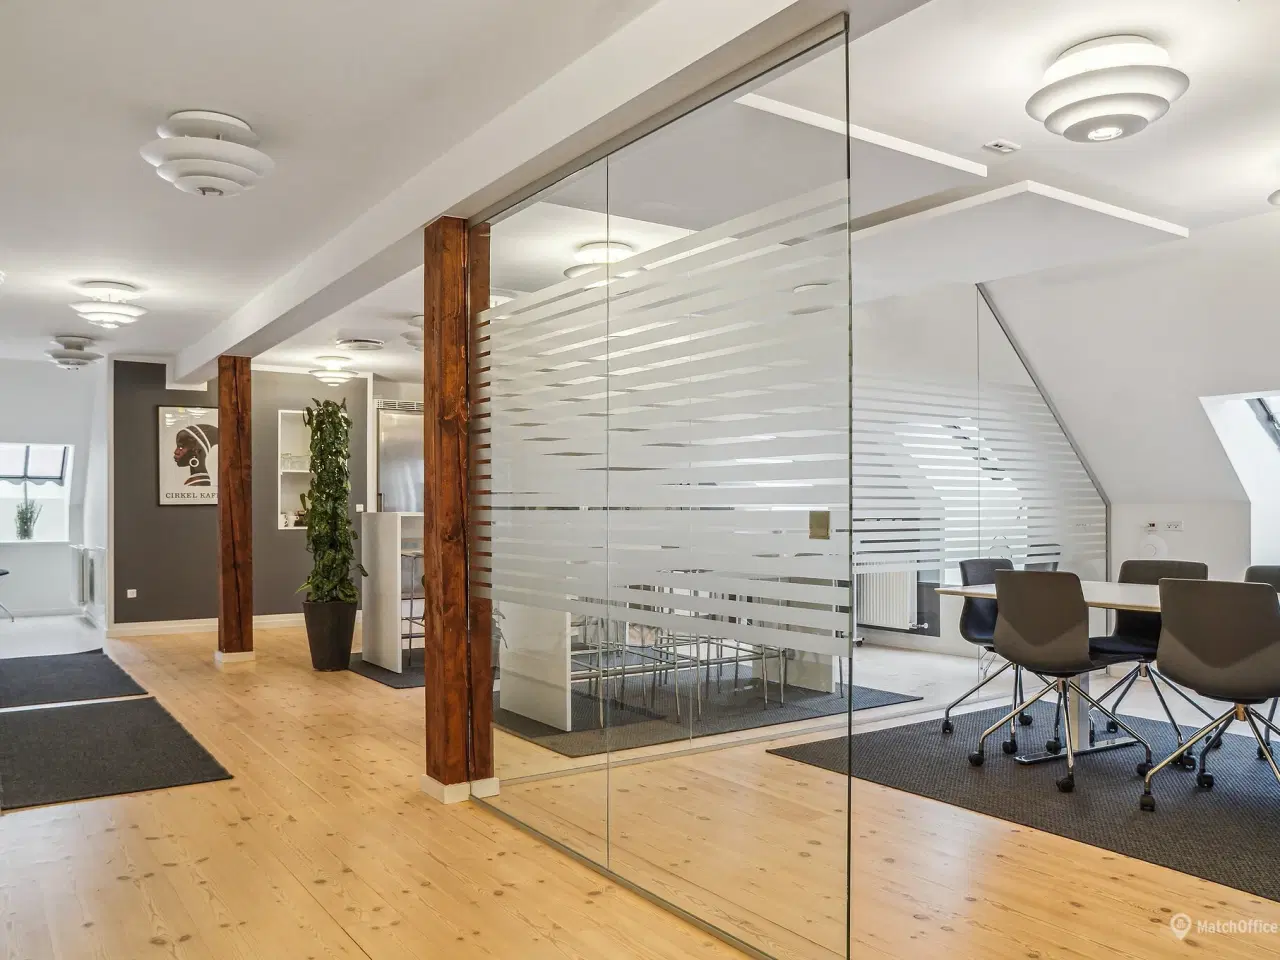 Billede 12 - 423 m² eksklusive kontorlokaler udlejes i flot City ejendom